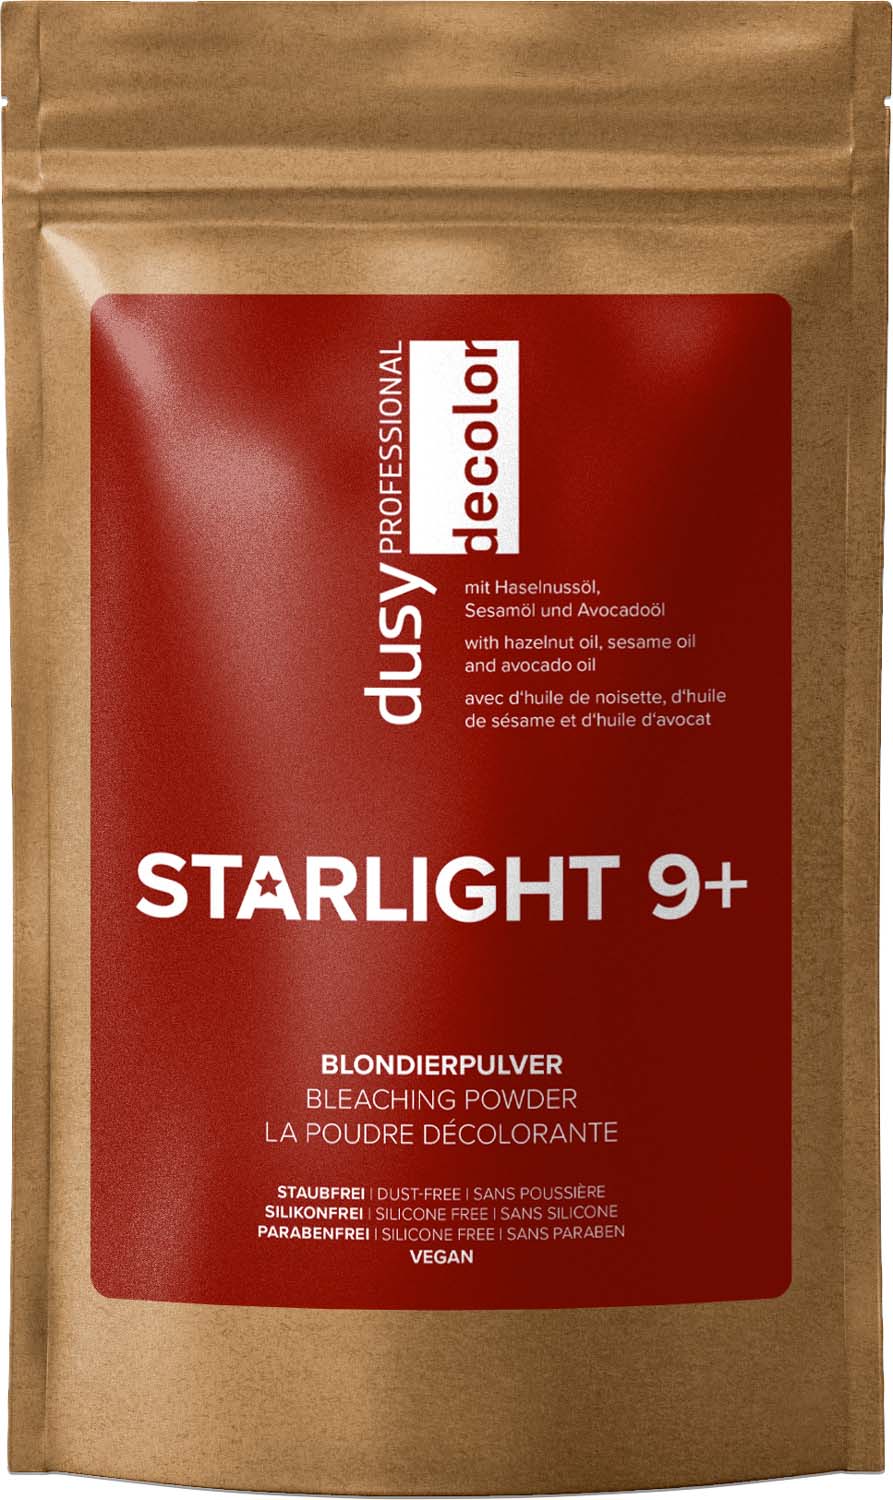 Dusy Starlight 9+ Blondiermittel